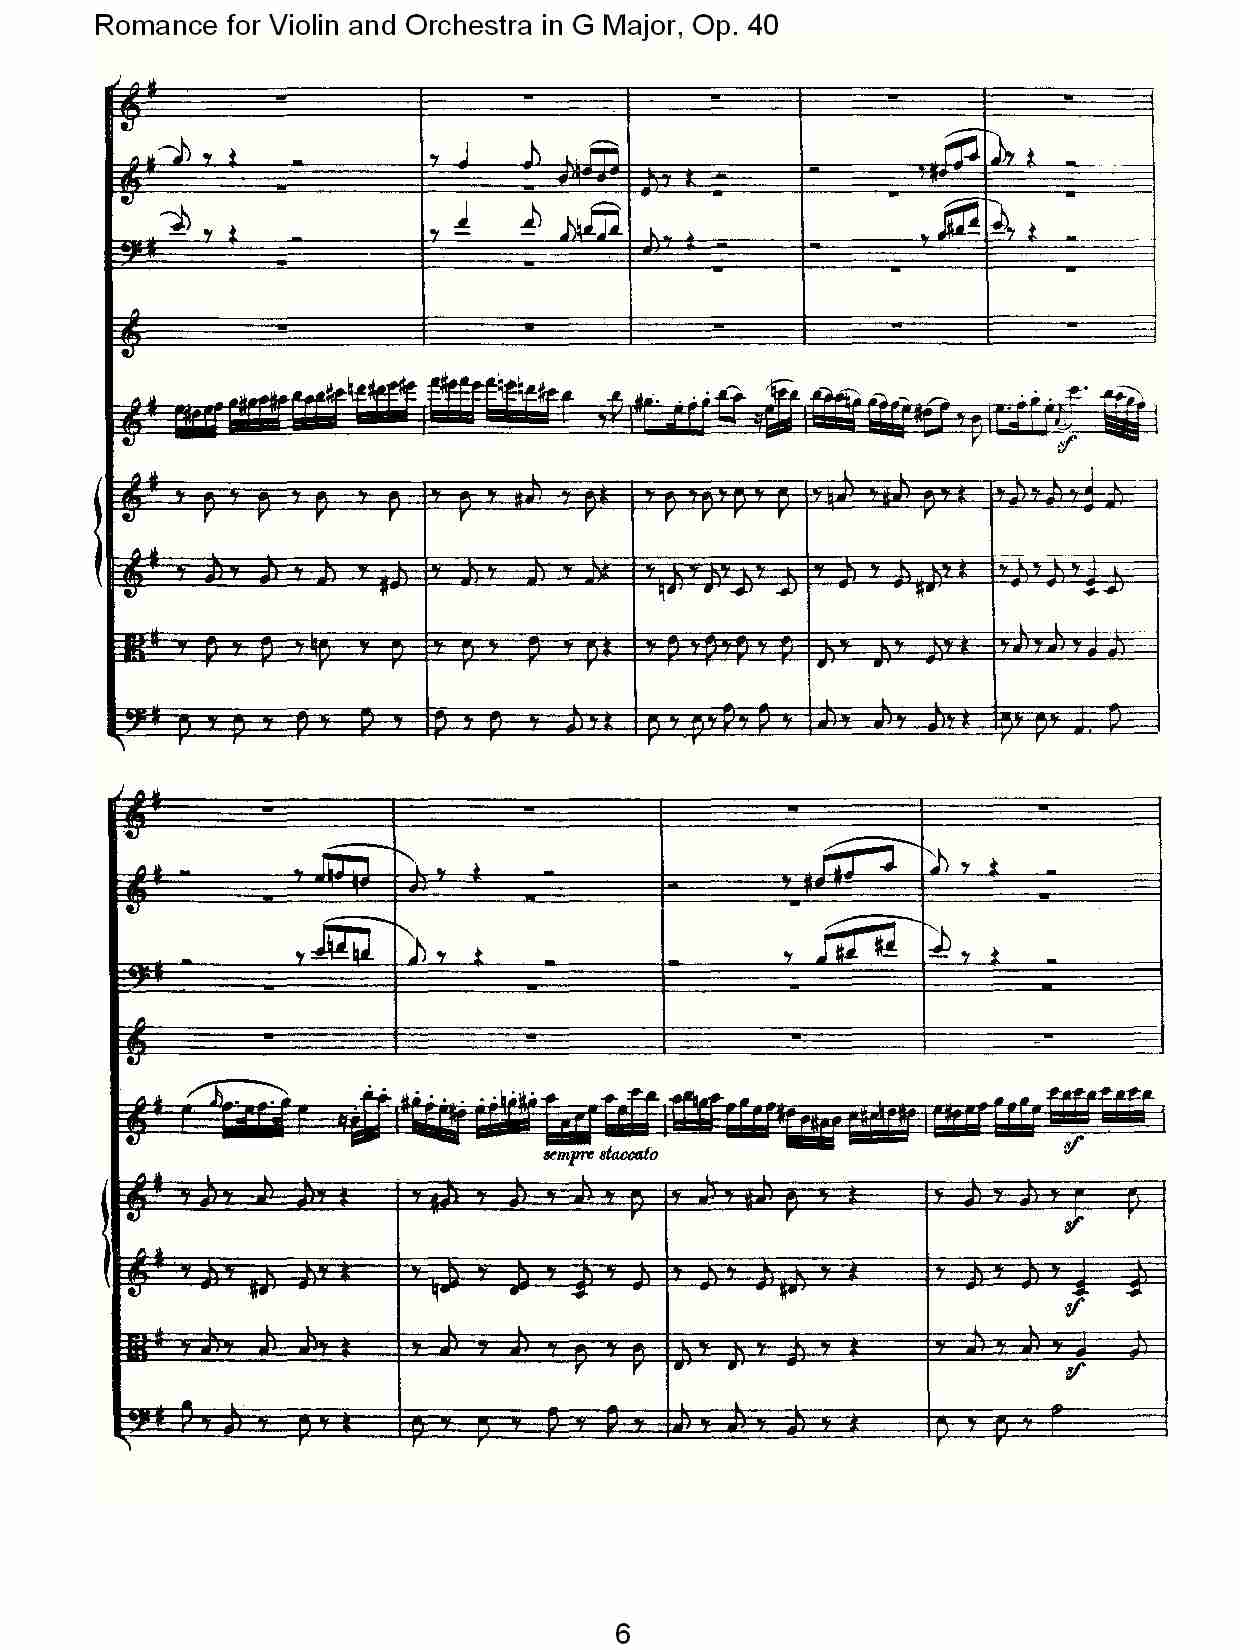 G小调小提琴与管弦乐罗曼曲Op.40总谱（图6）